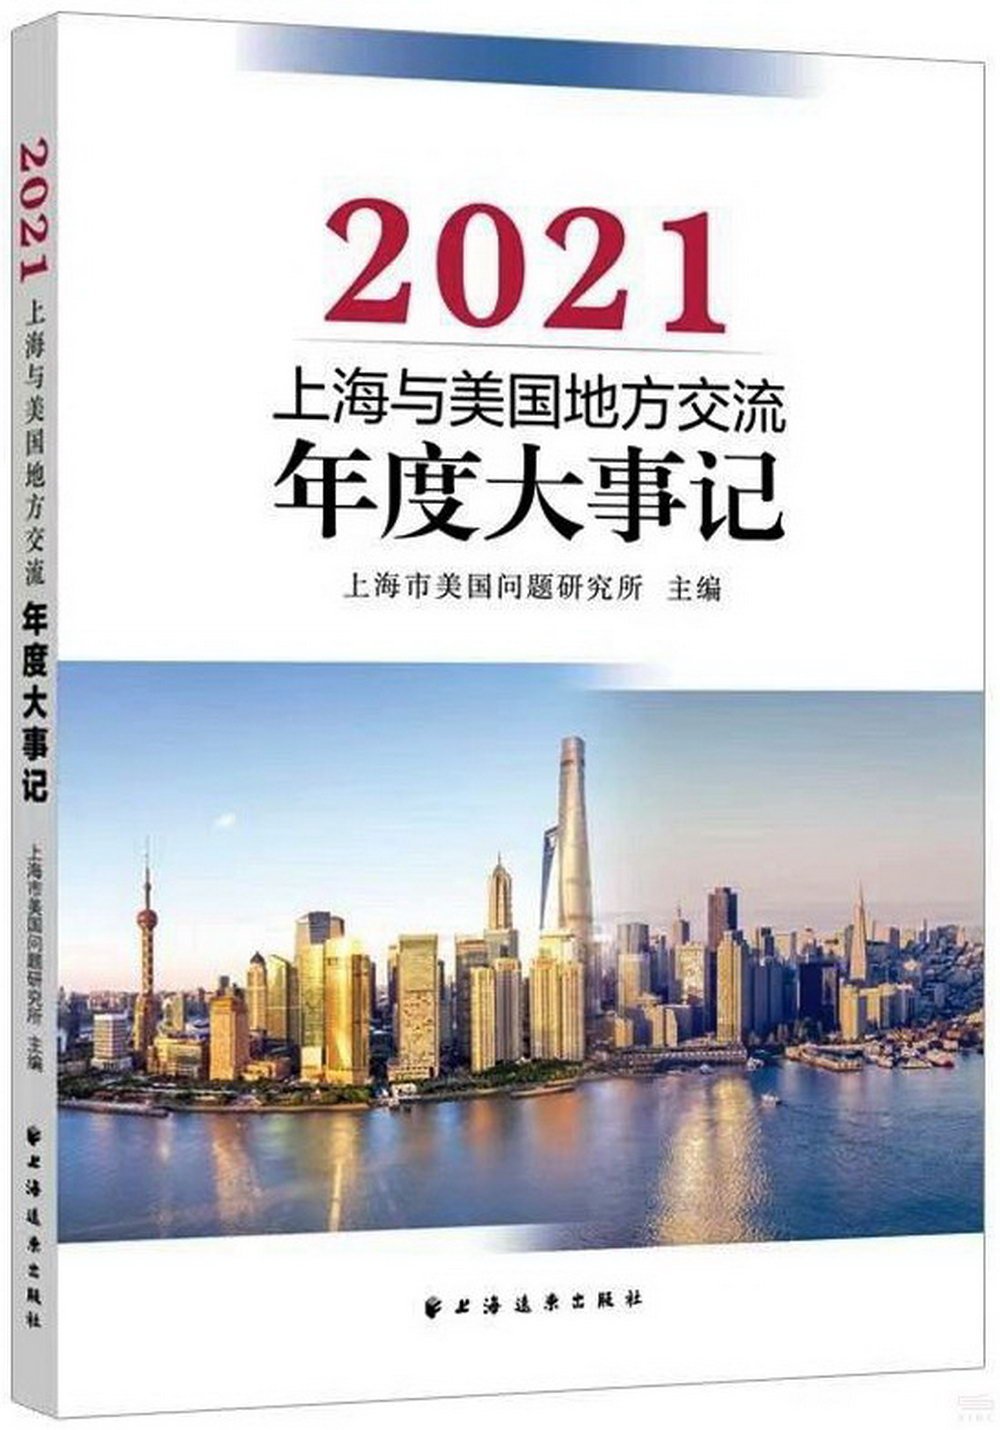 上海與美國地方交流年度大事記（2021）